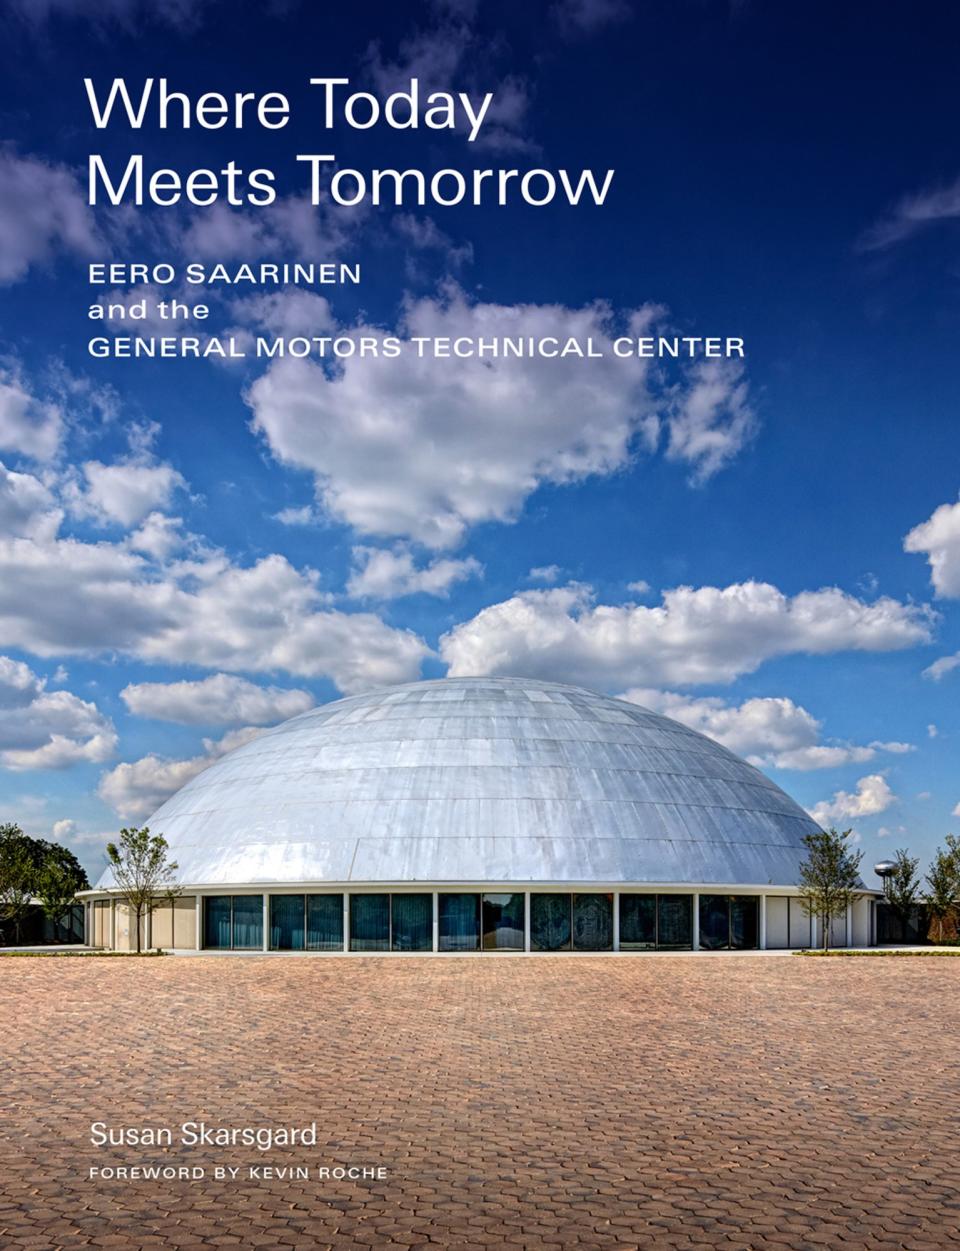 Peek Inside Eero Saarinen’s Iconic General Motors Technical Center